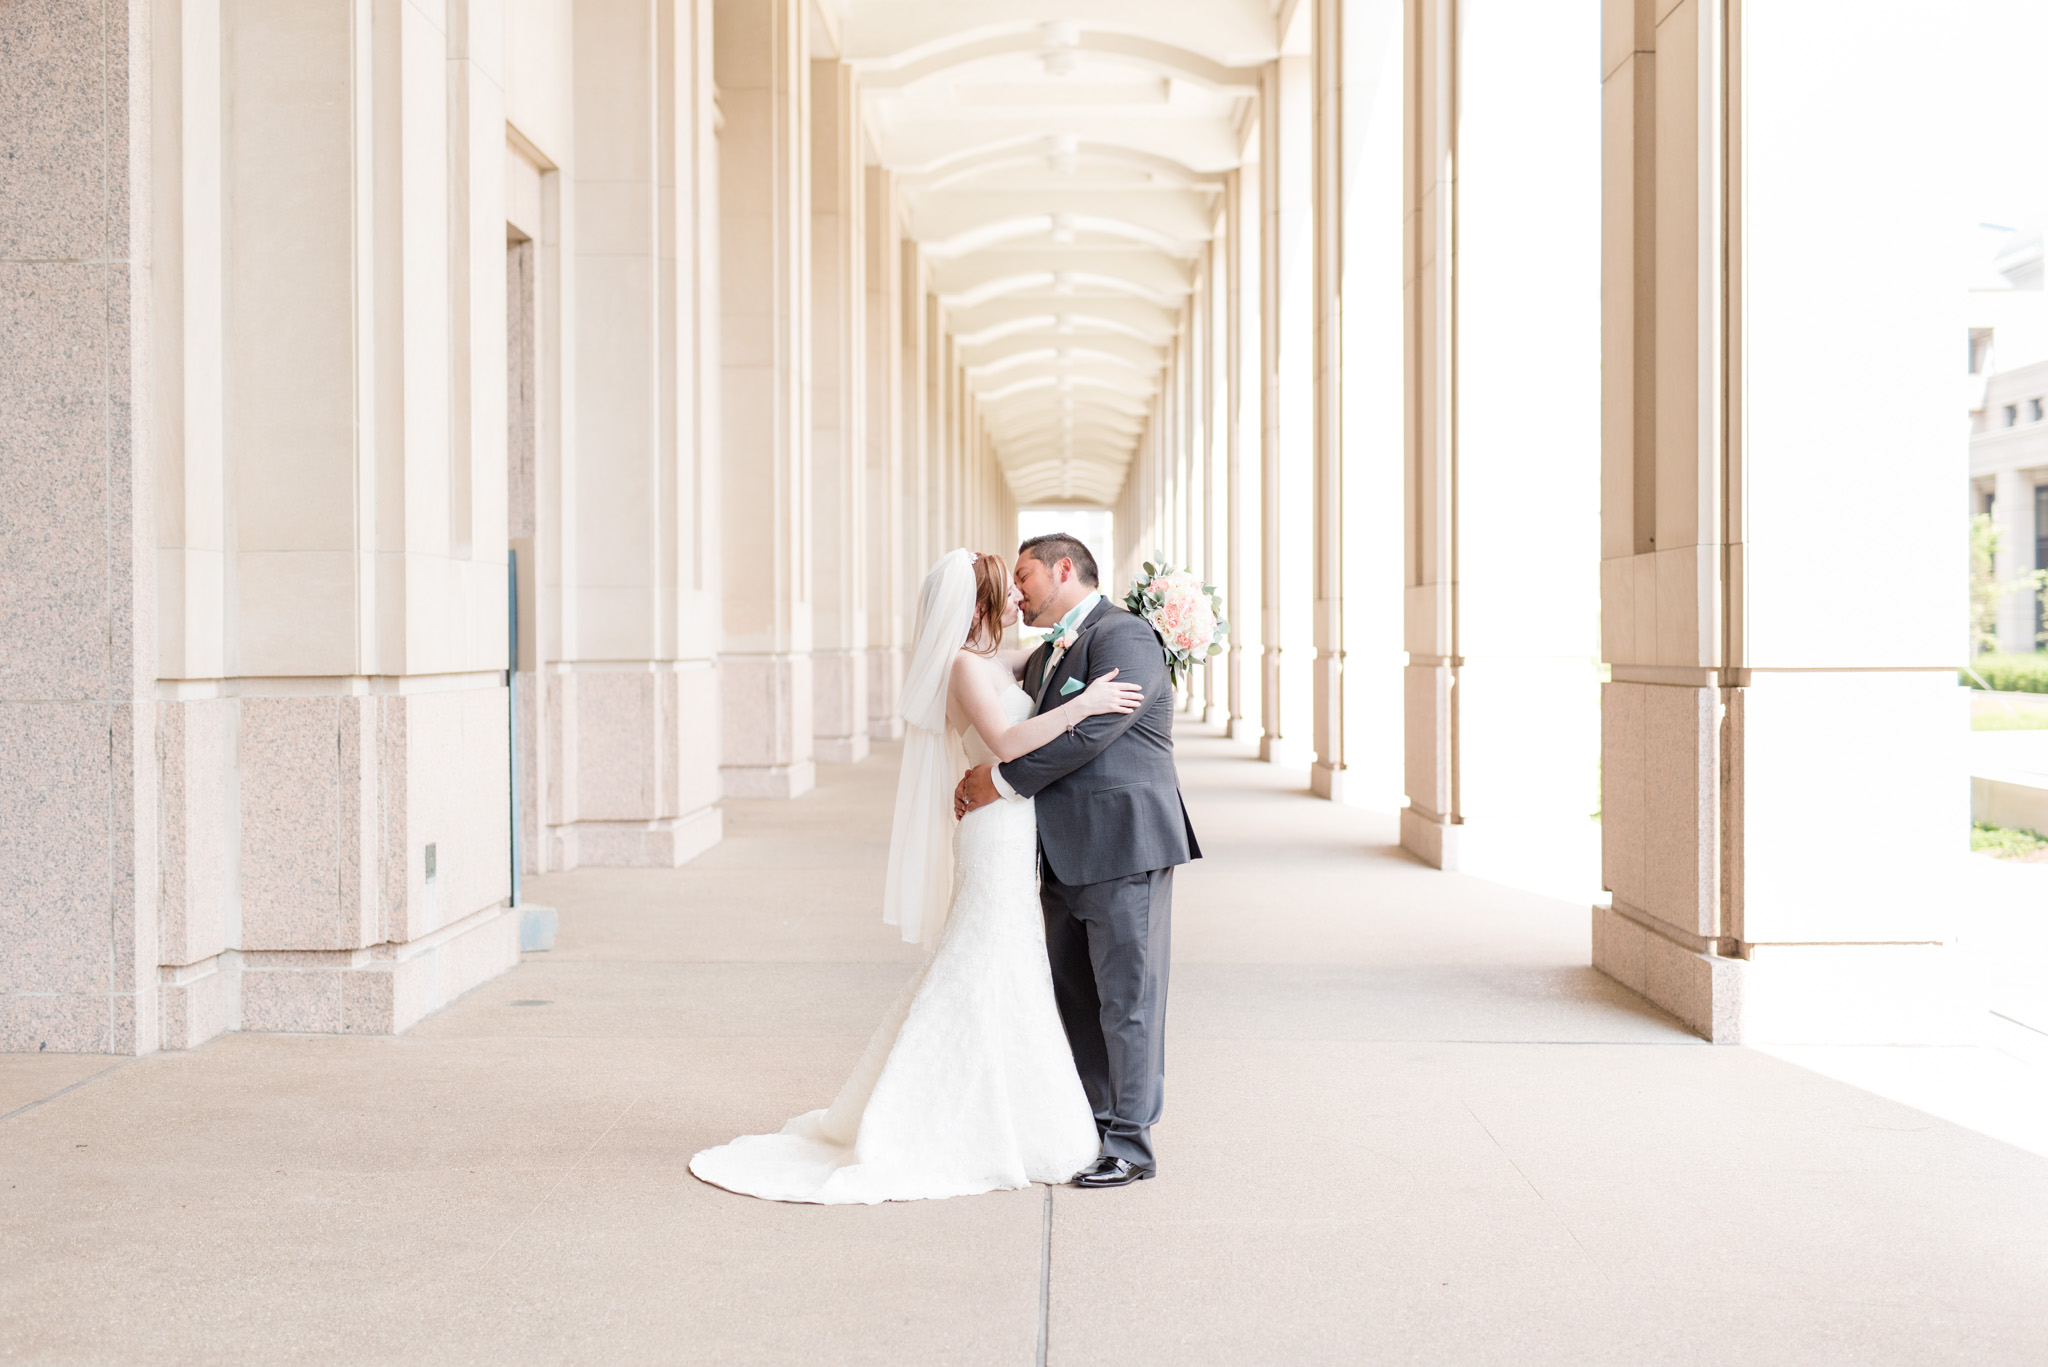 Bride and groom kiss among pillars.